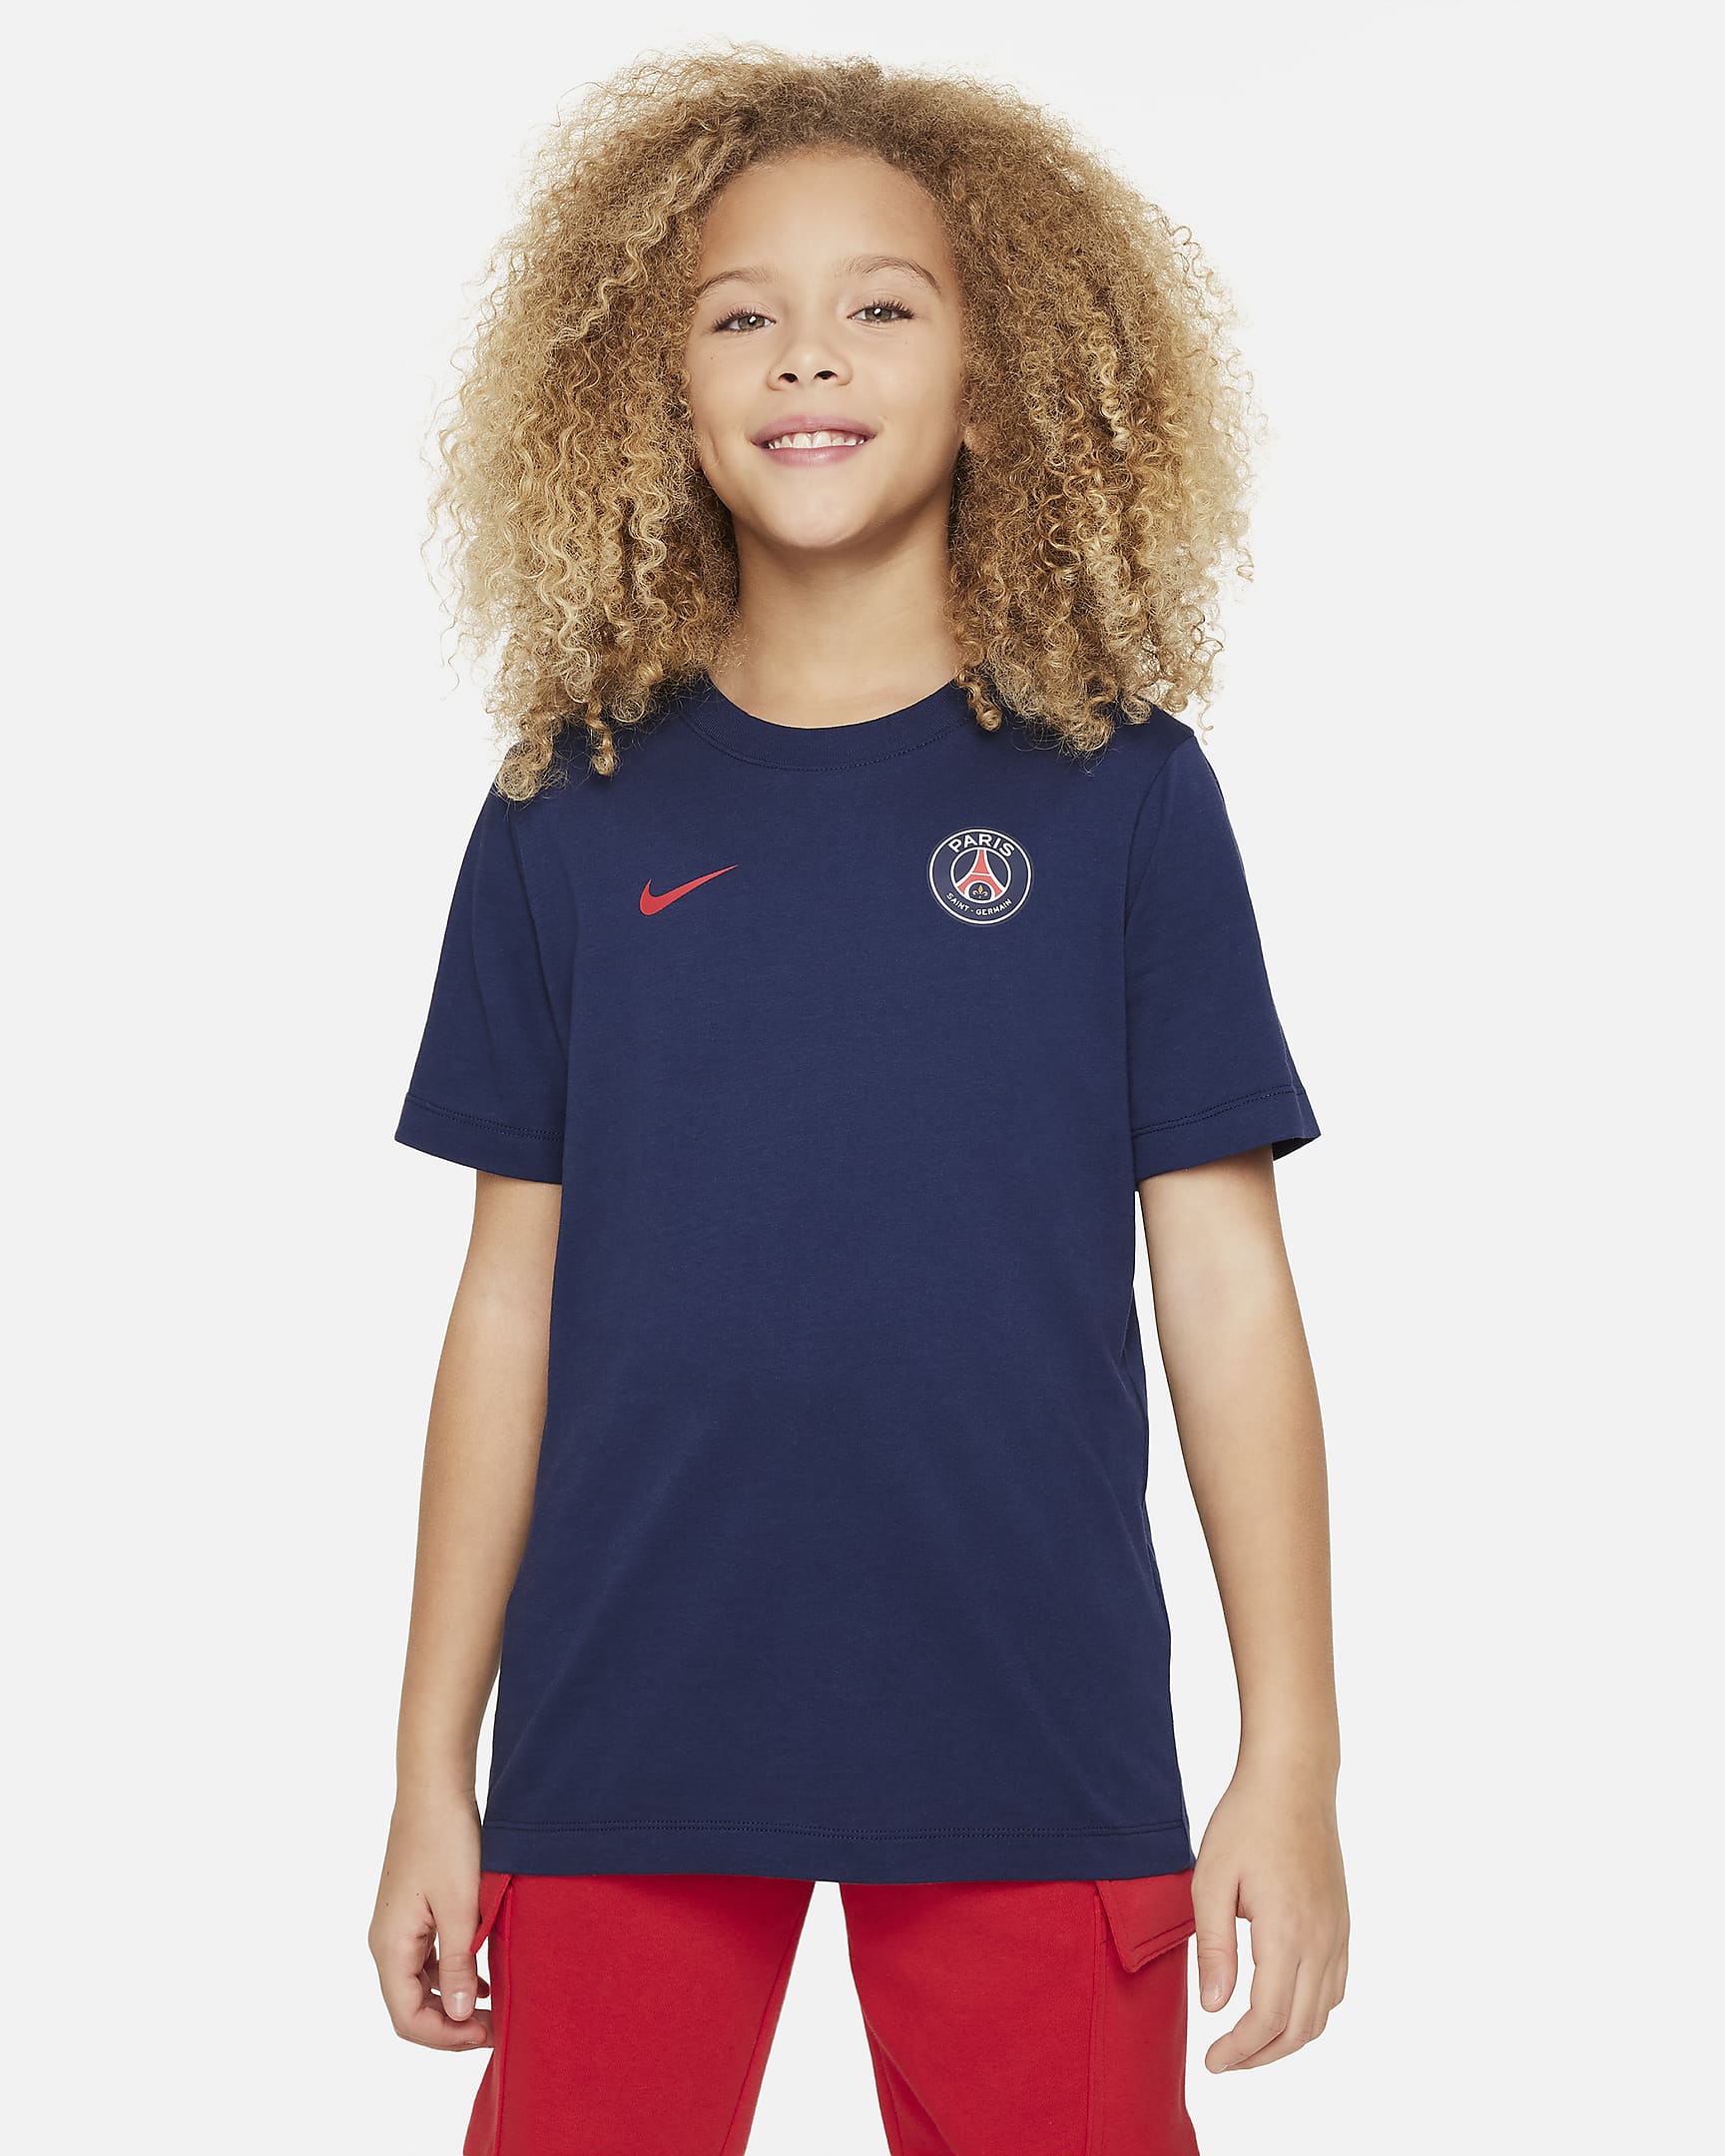 Paris Saint-Germain Older Kids' Nike Football T-shirt. Nike ZA